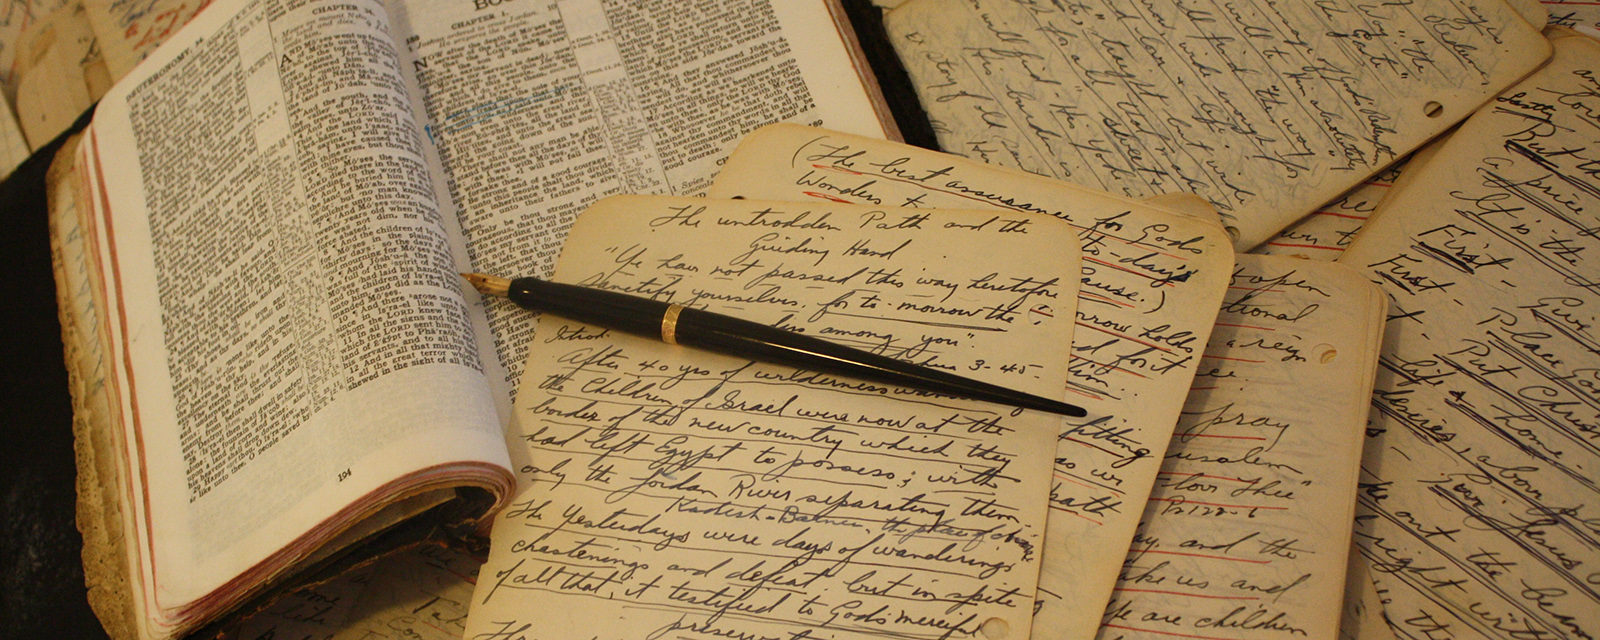 Eine Bibel und handschriftliche Notizen